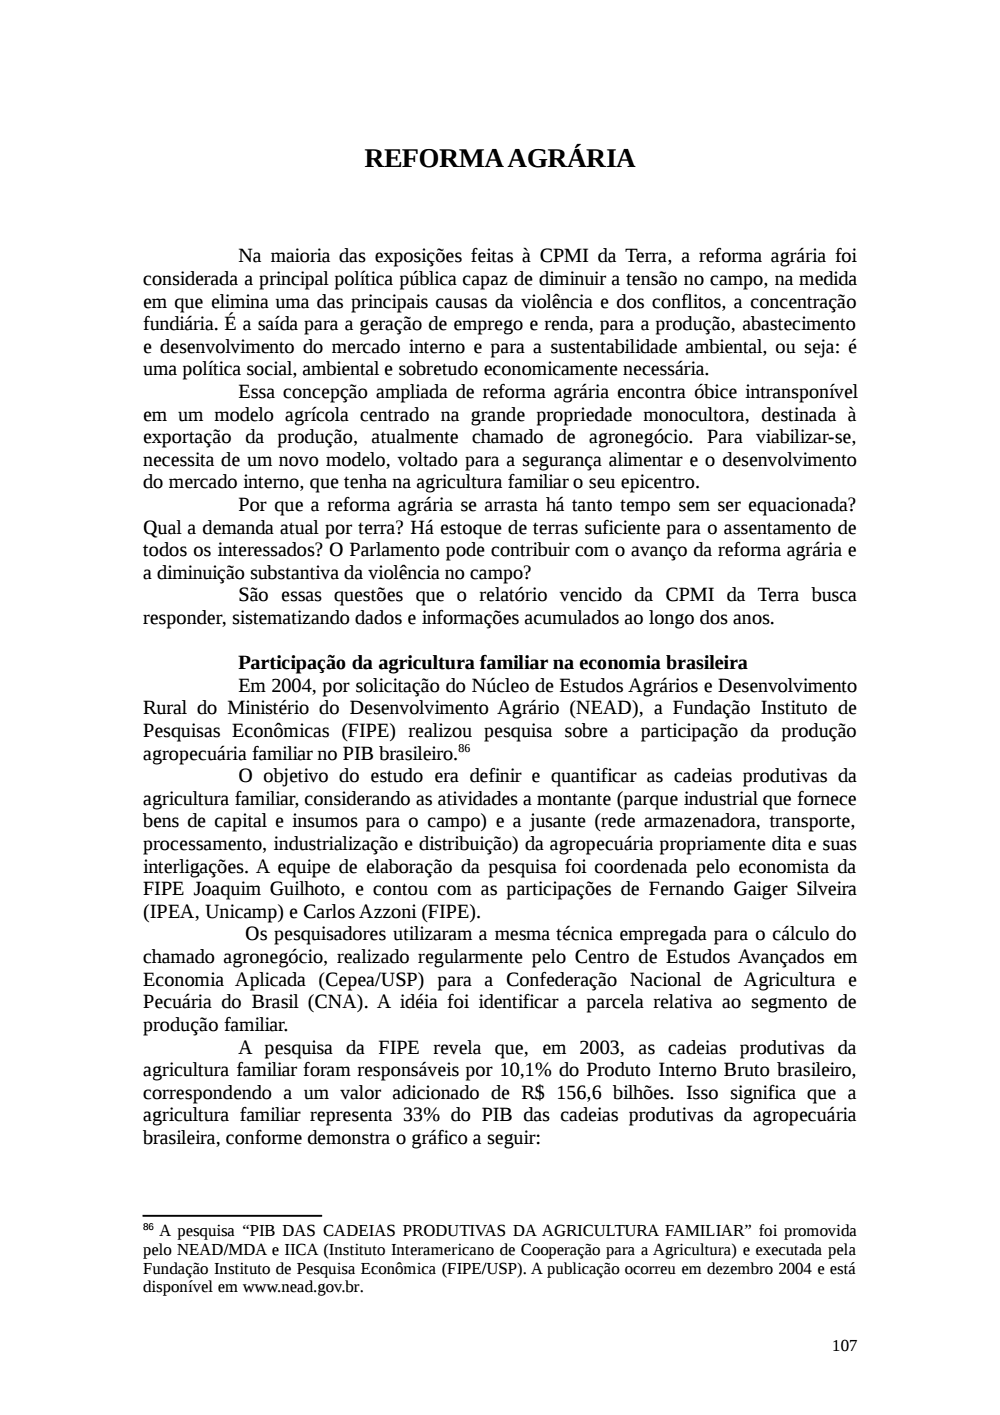 Page 107 from Relatório final da comissão